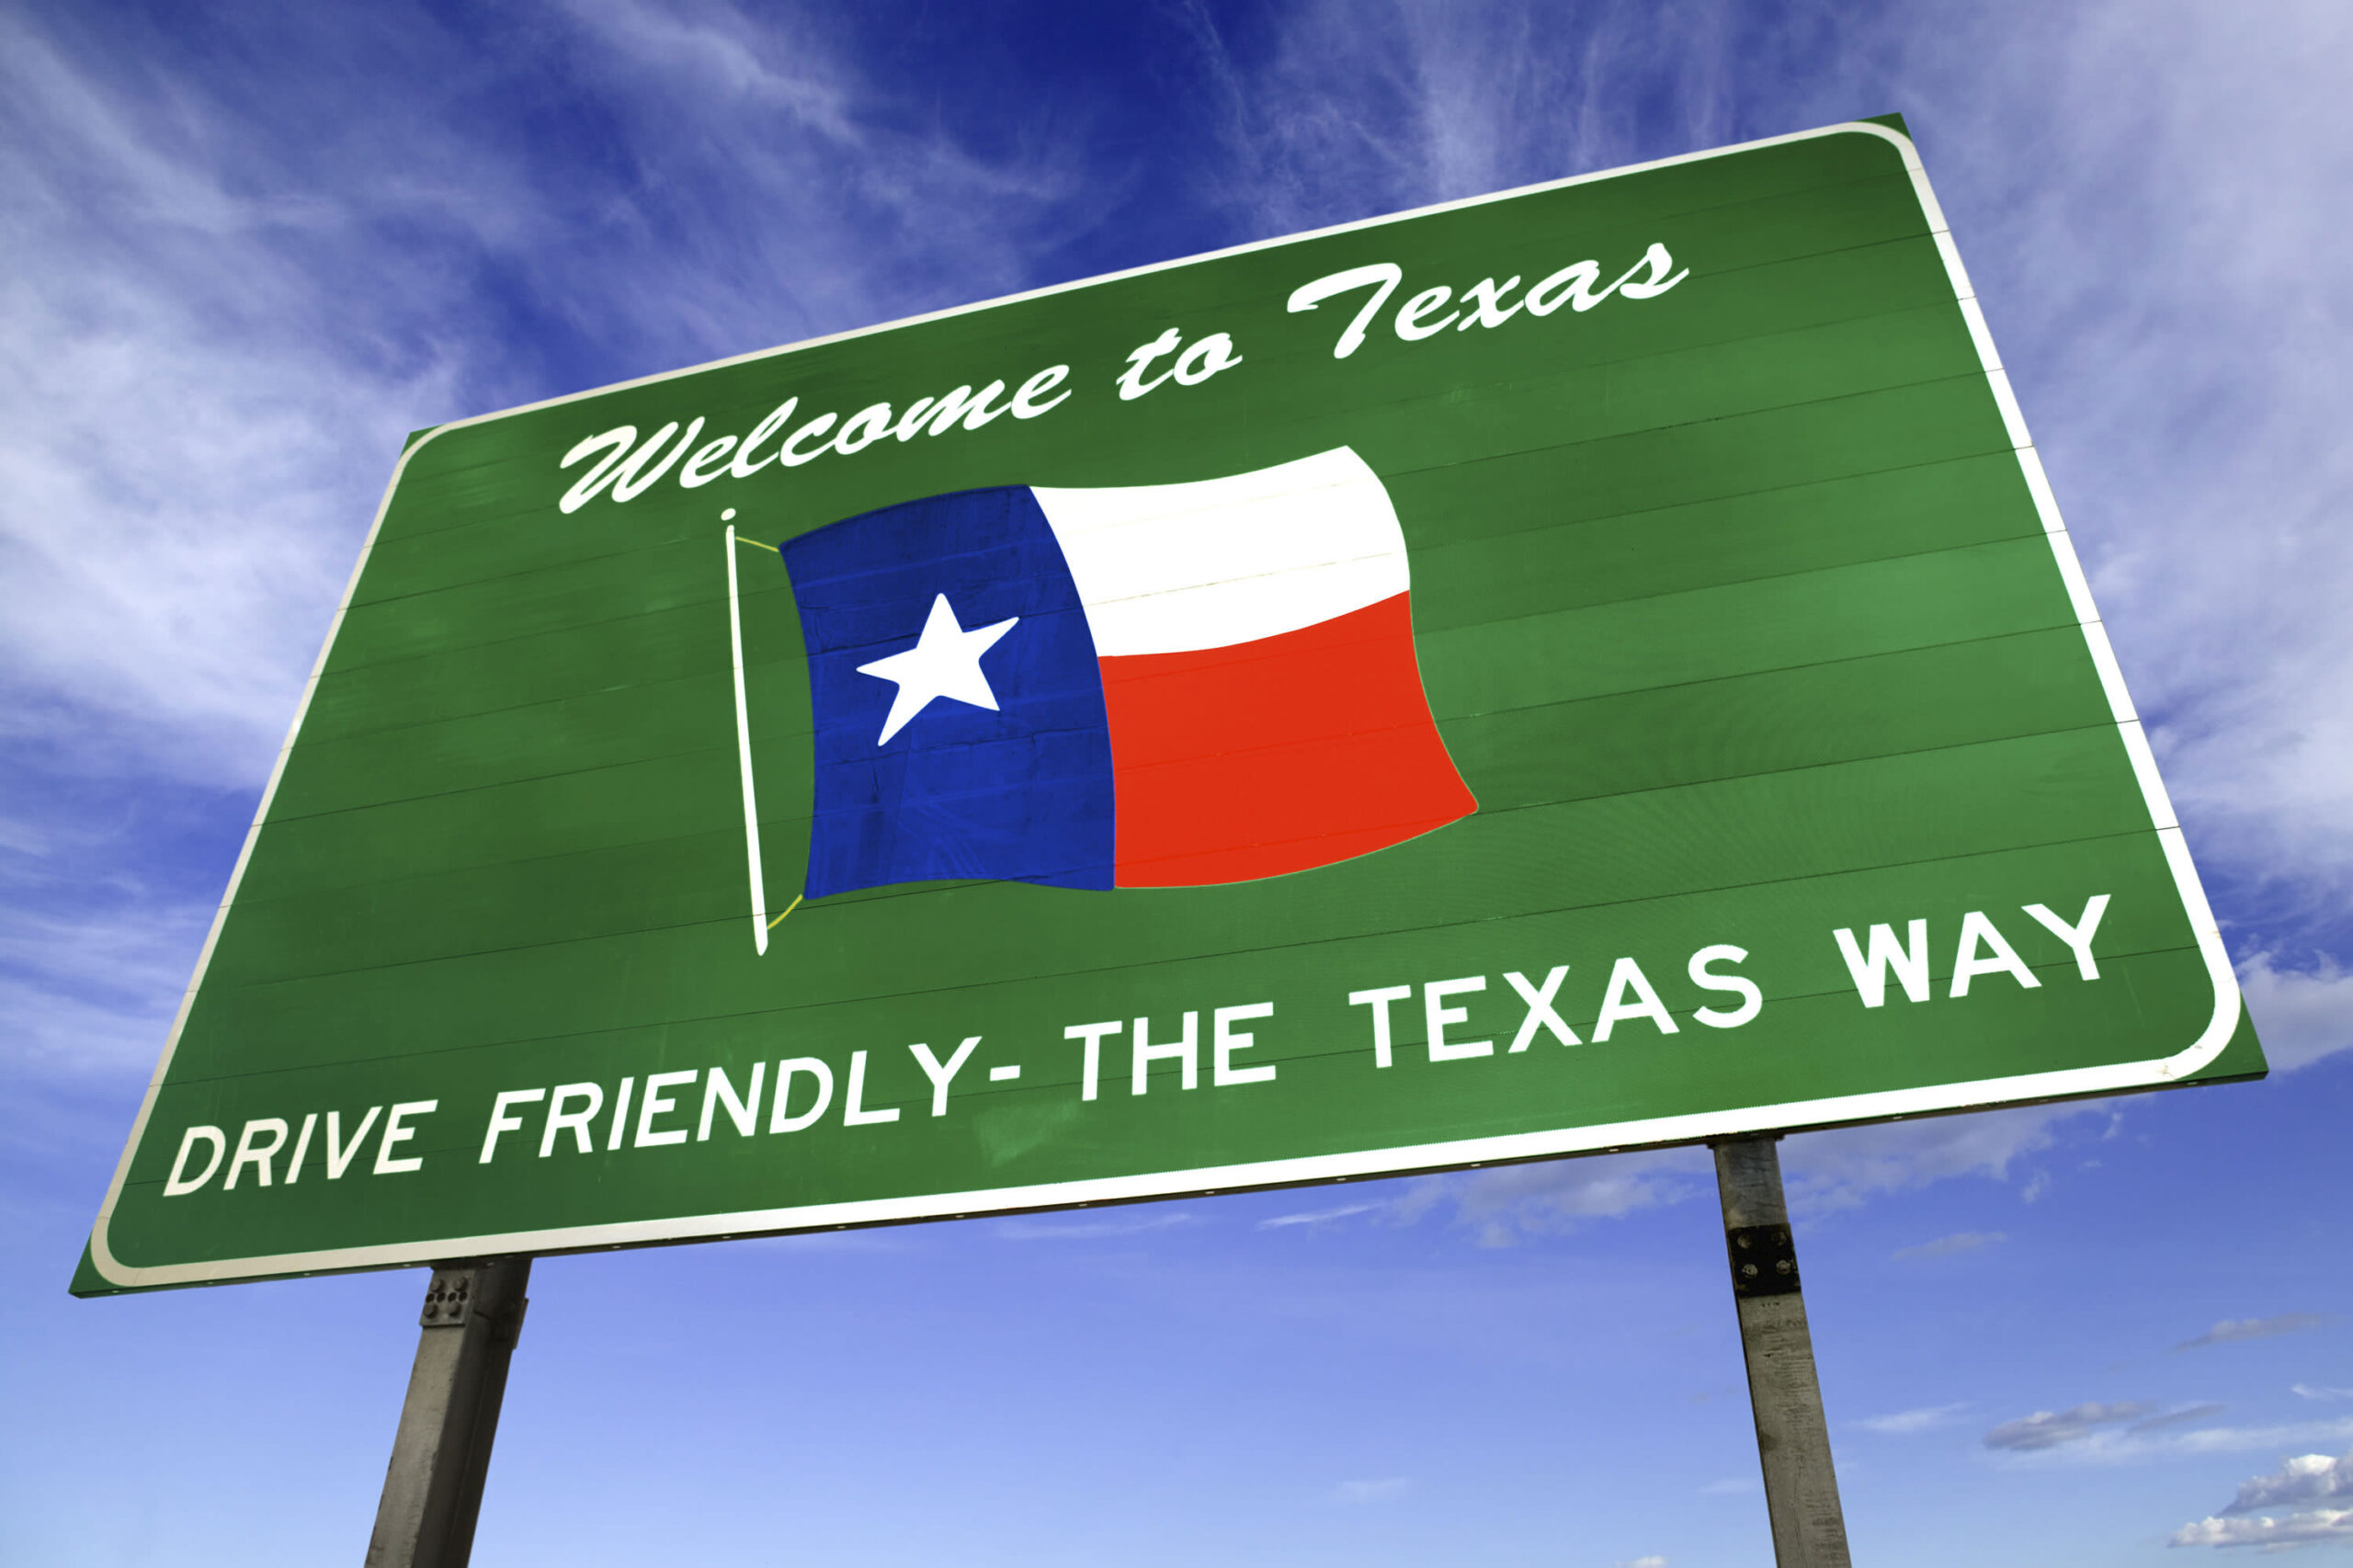 Texas válhat a bitcoin bányászat egyik fellegvárává, kiemelt kép